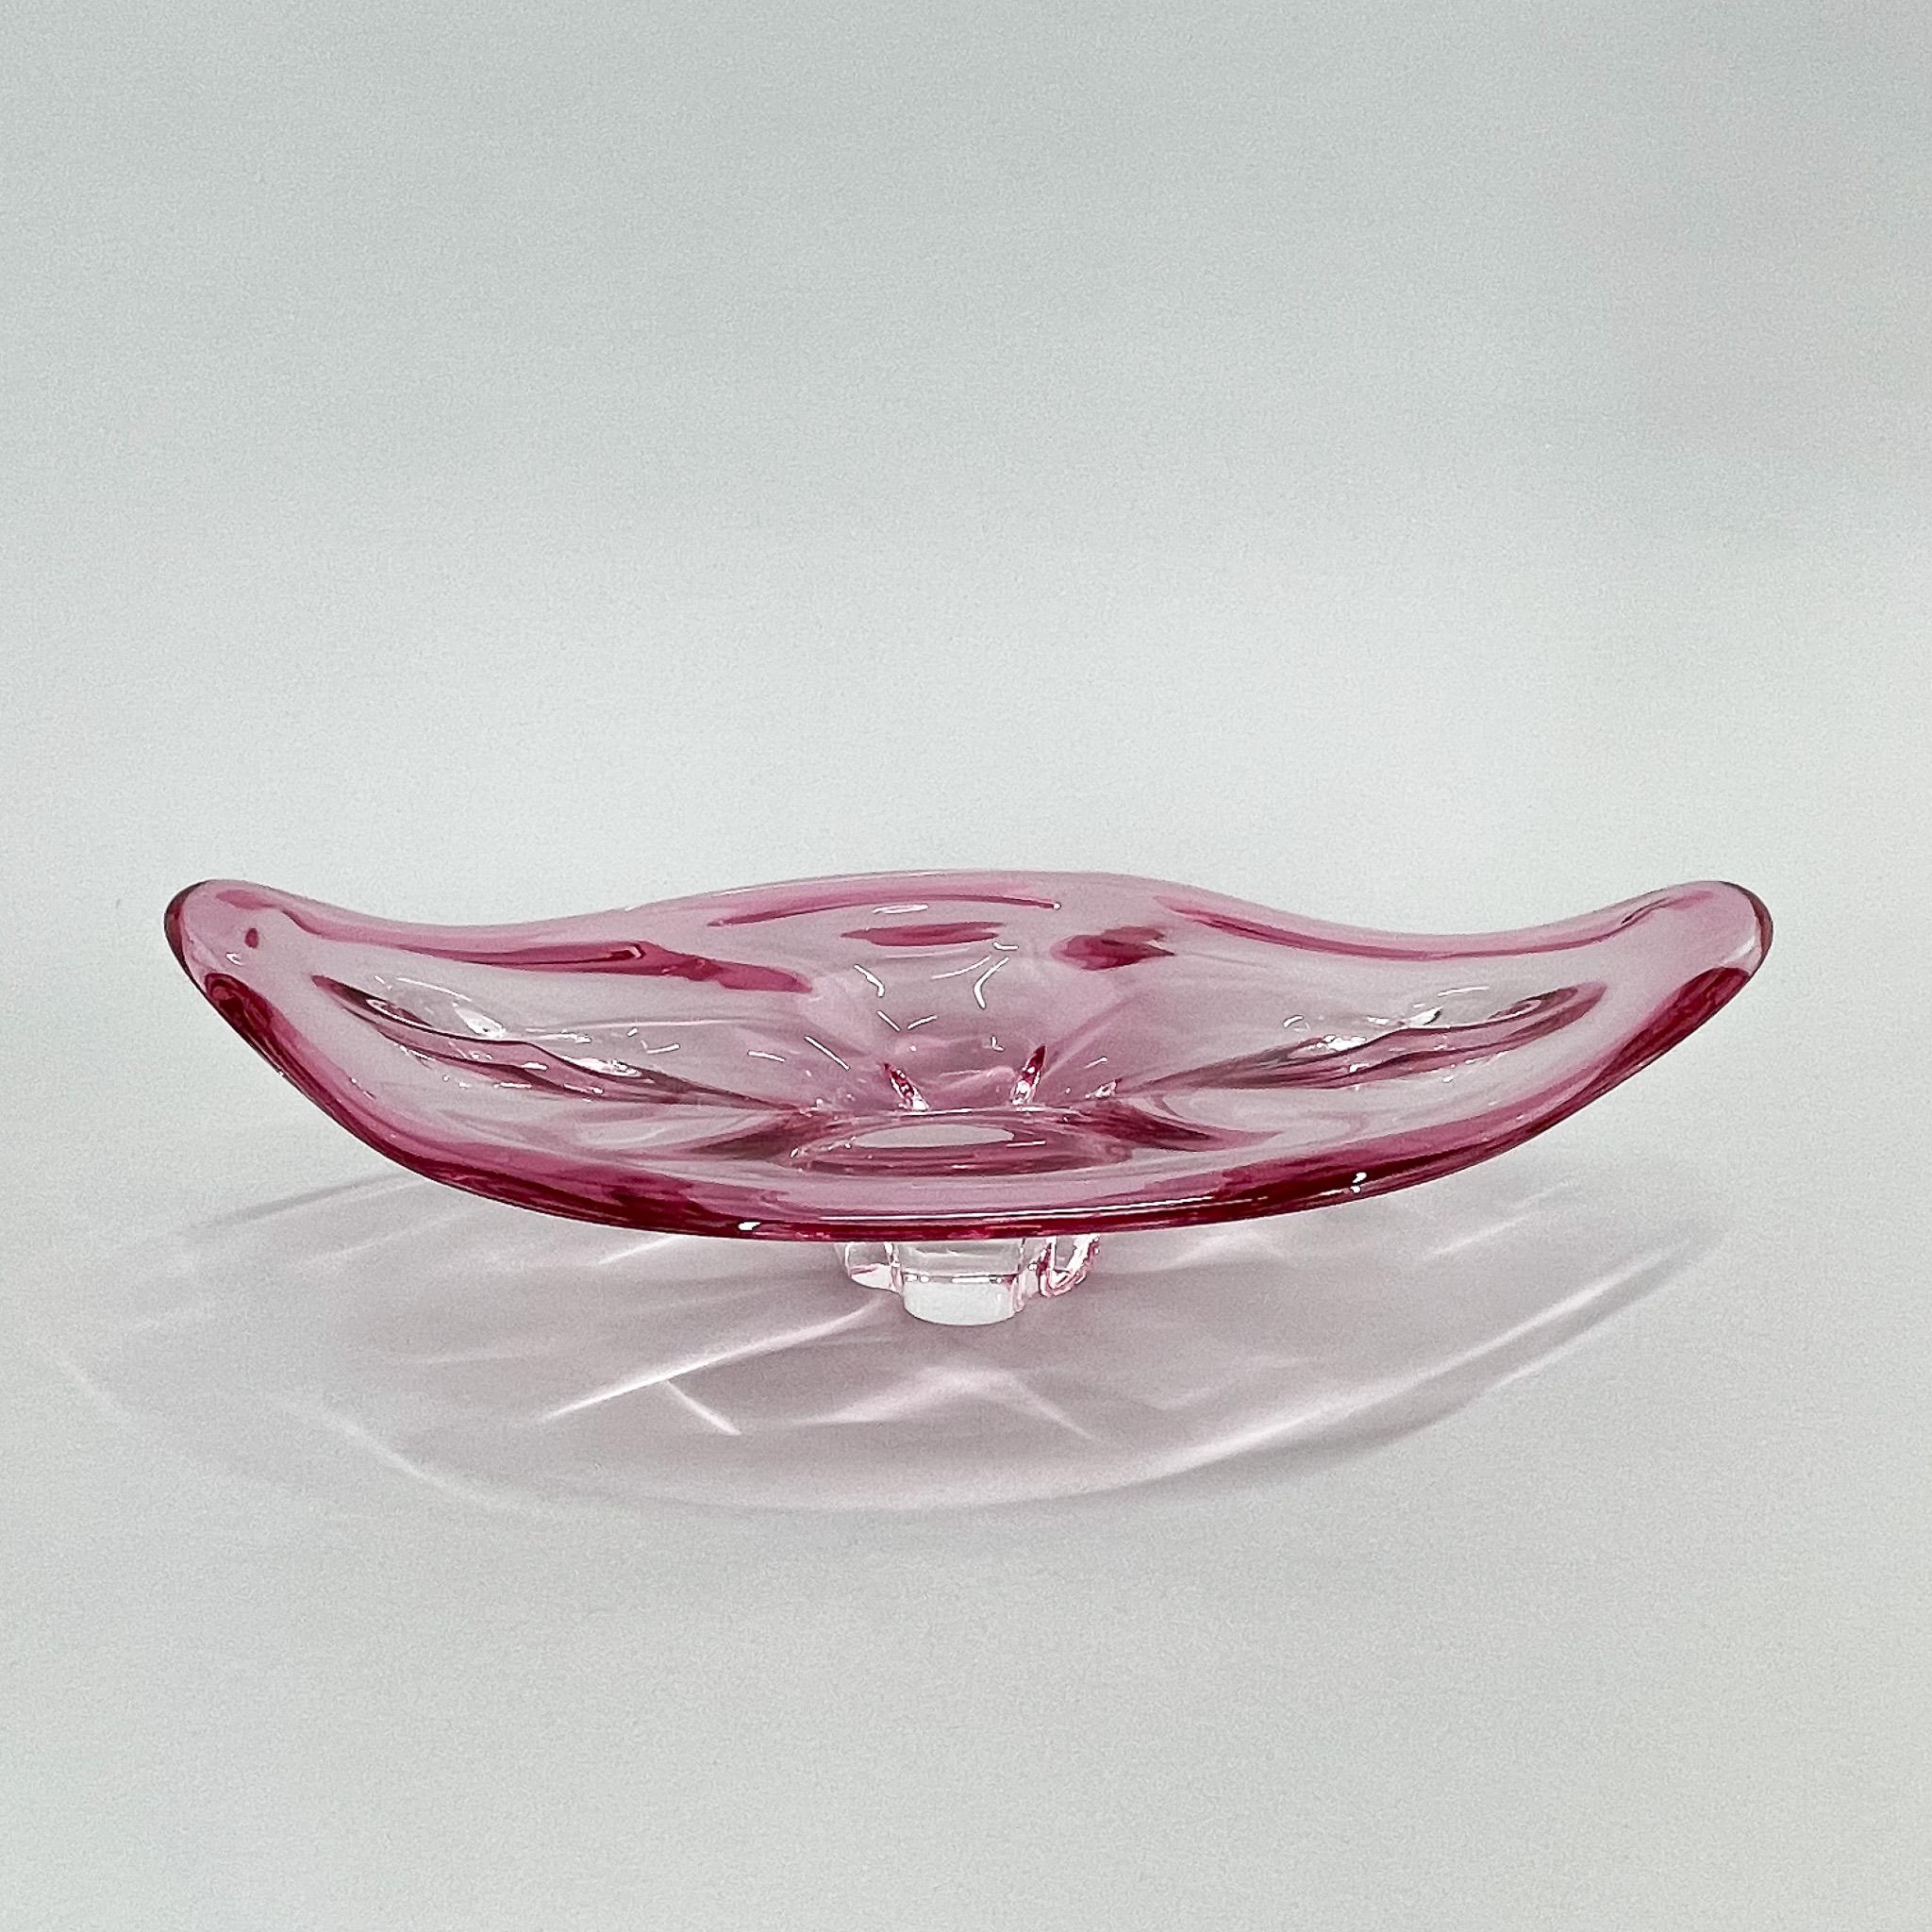 Bol en verre lourd conçu par Josef/One dans les années 1960 et fabriqué par la verrerie Chribska dans l'ancienne Tchécoslovaquie. 